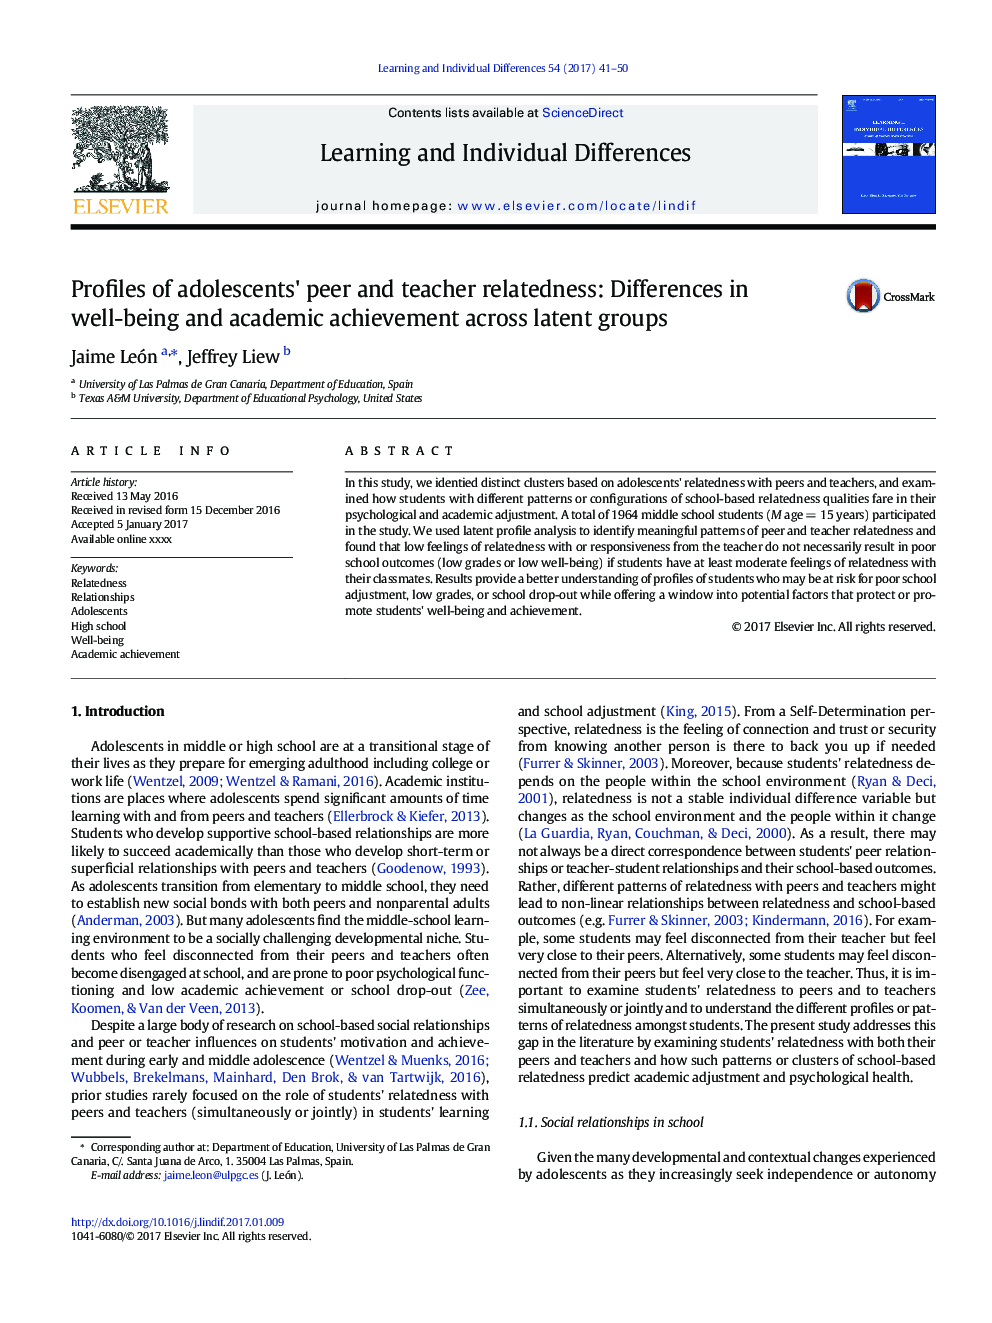 پروفایل های مربوط به همسالان و معلمین نوجوانان: تفاوت در رفاه و موفقیت تحصیلی در گروه های پنهان 